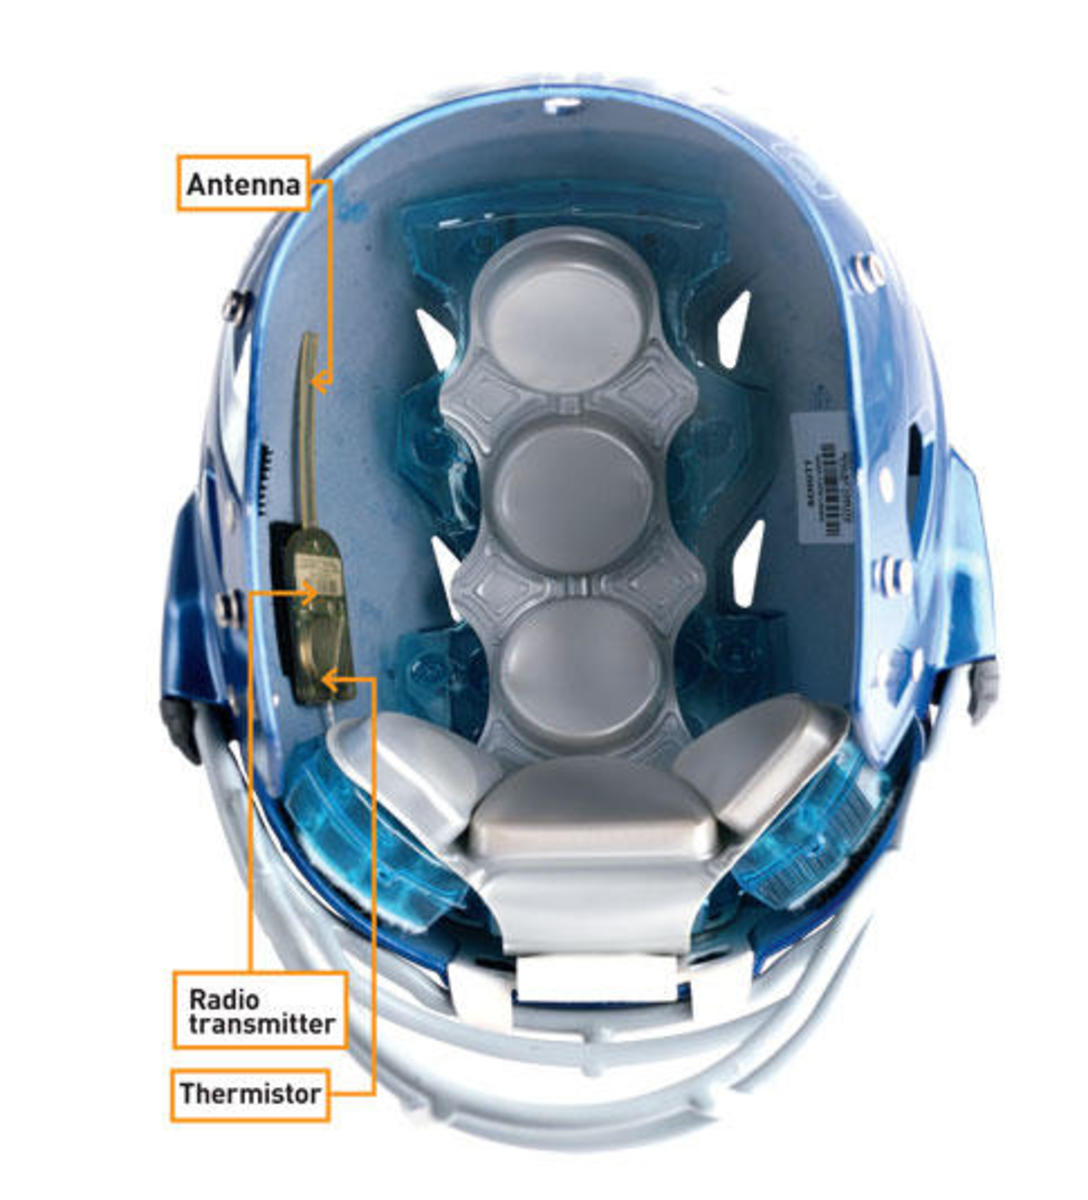 Helmet That Monitored Temperature